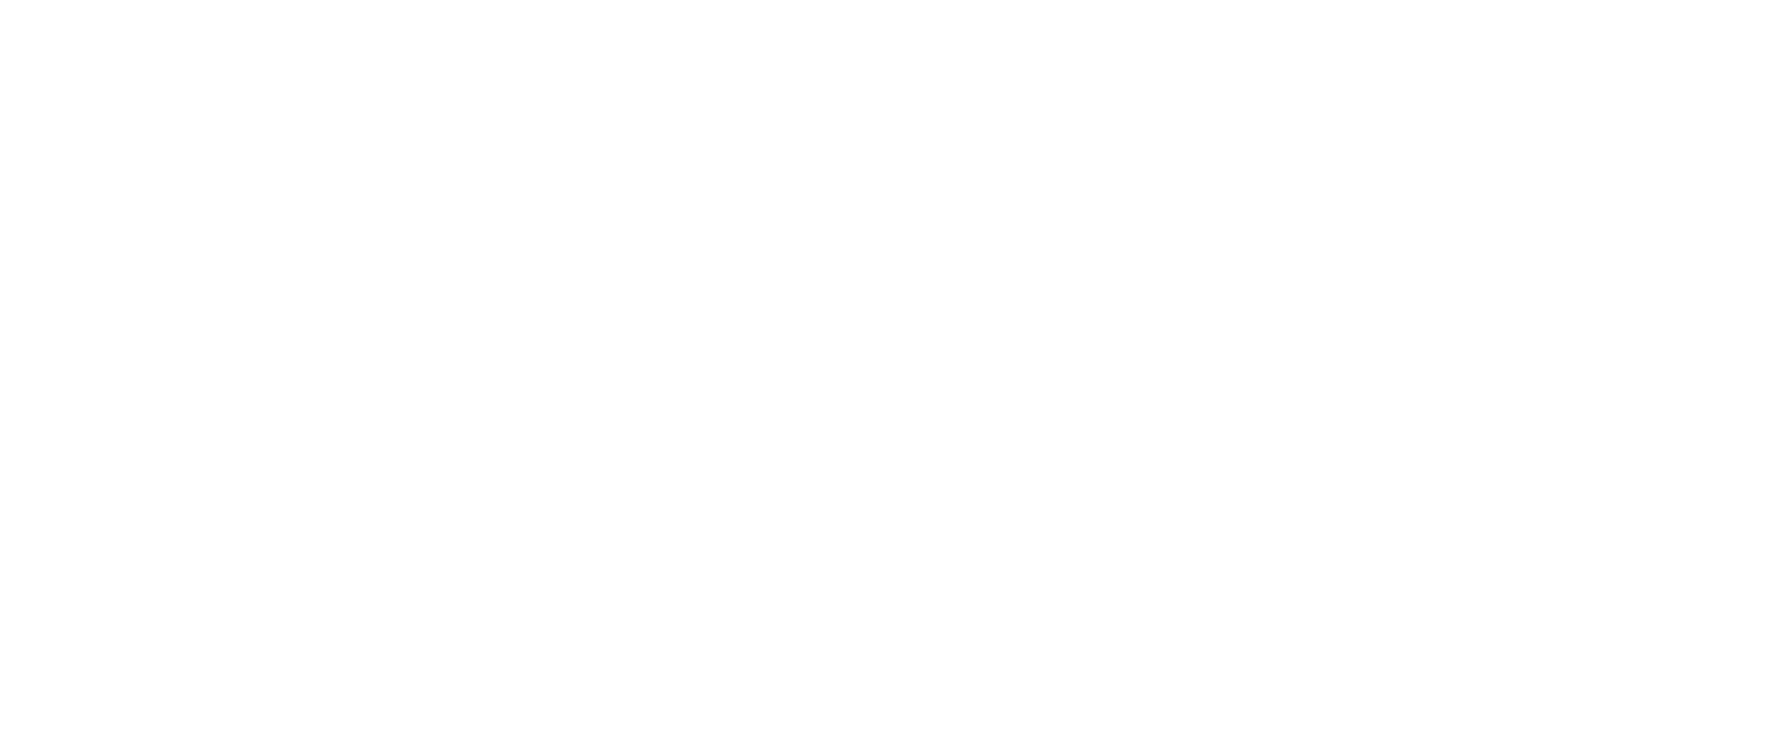 XPEL logo pour fonds sombres (PNG transparent)